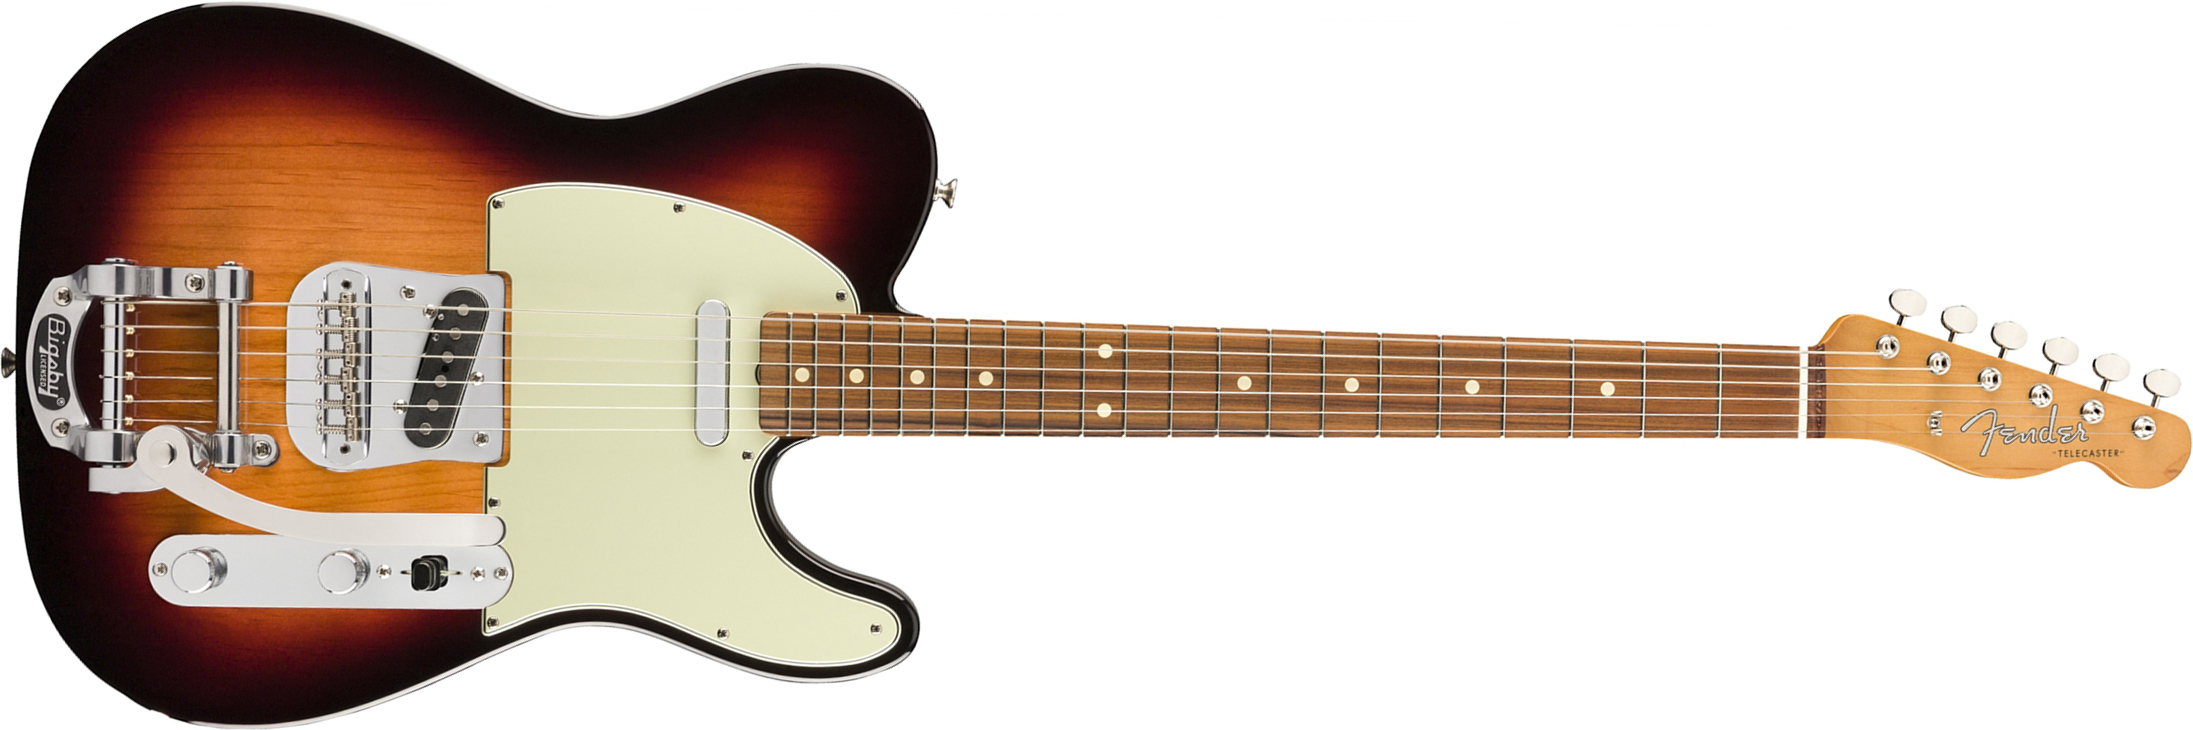 Fender Tele 60s Bigsby Vintera Vintage Mex Pf - 3-color Sunburst - E-Gitarre in Teleform - Main picture